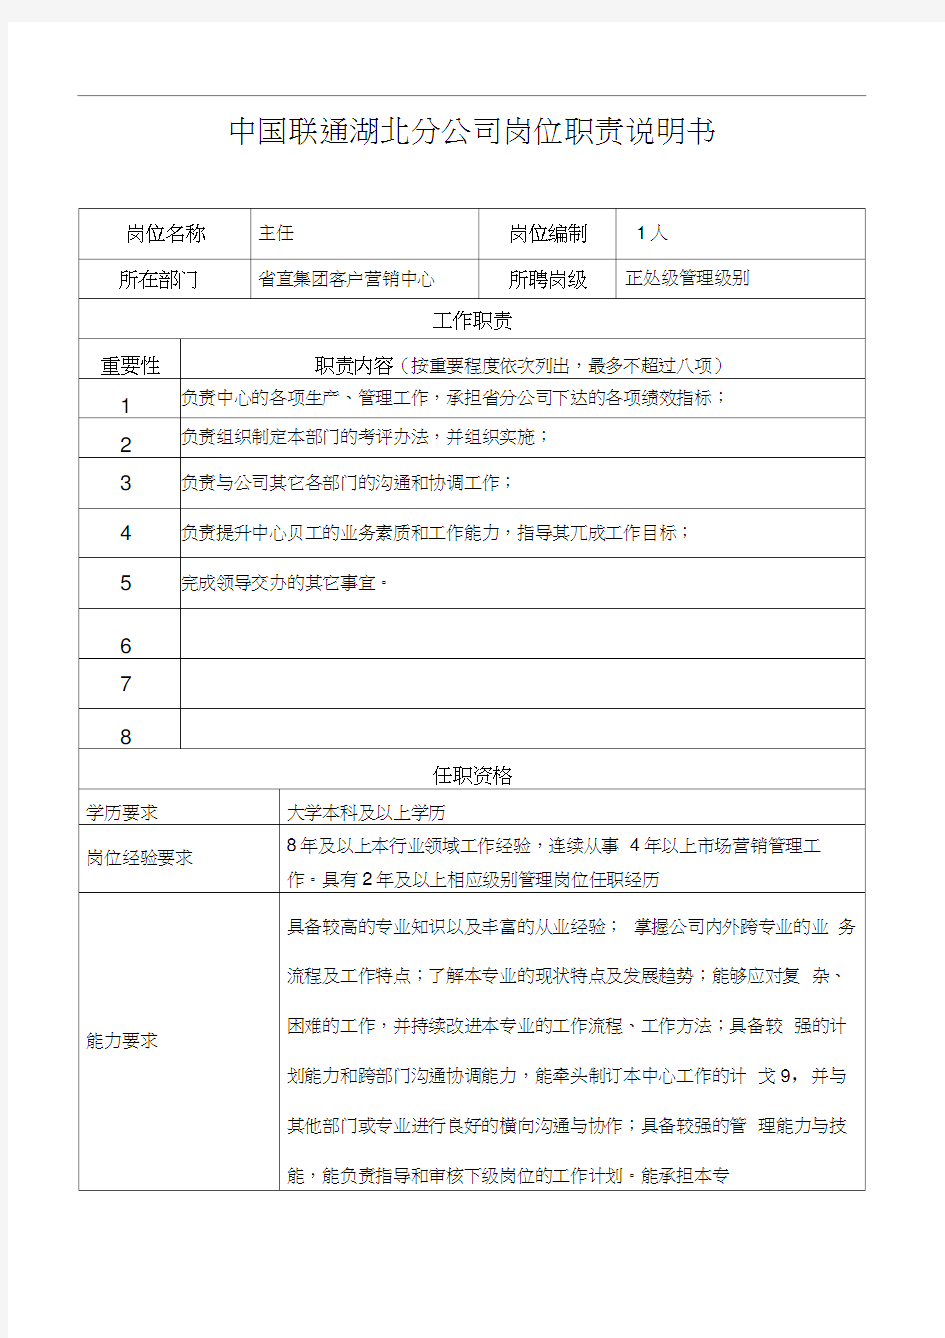 中国联通湖北分公司岗位职责说明书(1)